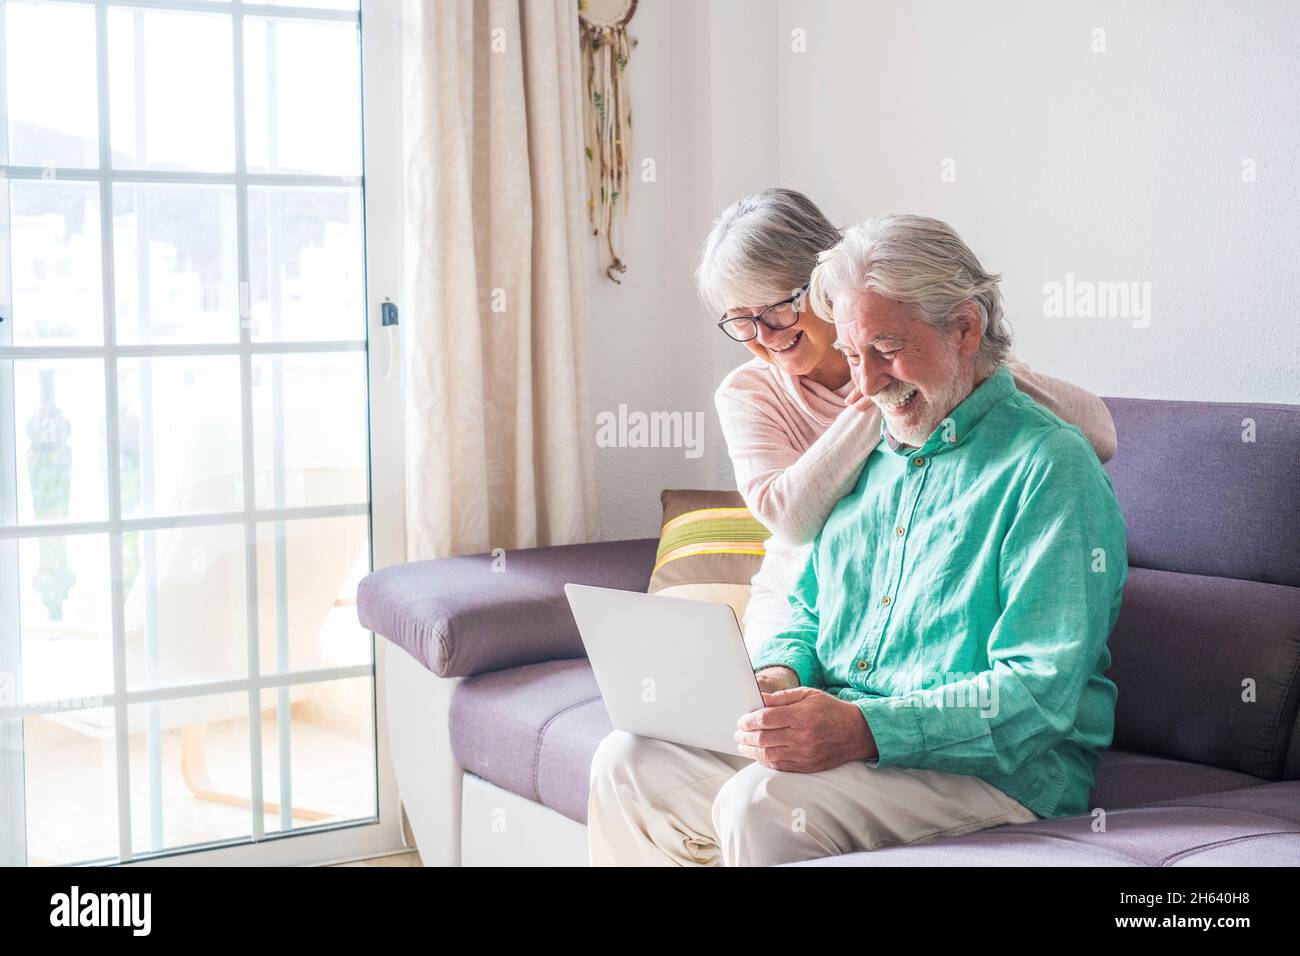 due persone anziane e mature a casa usano il tablet in un divano. i senior usano il notebook divertendosi e divertendosi a guardarlo. concetto di tempo libero e libero Foto Stock